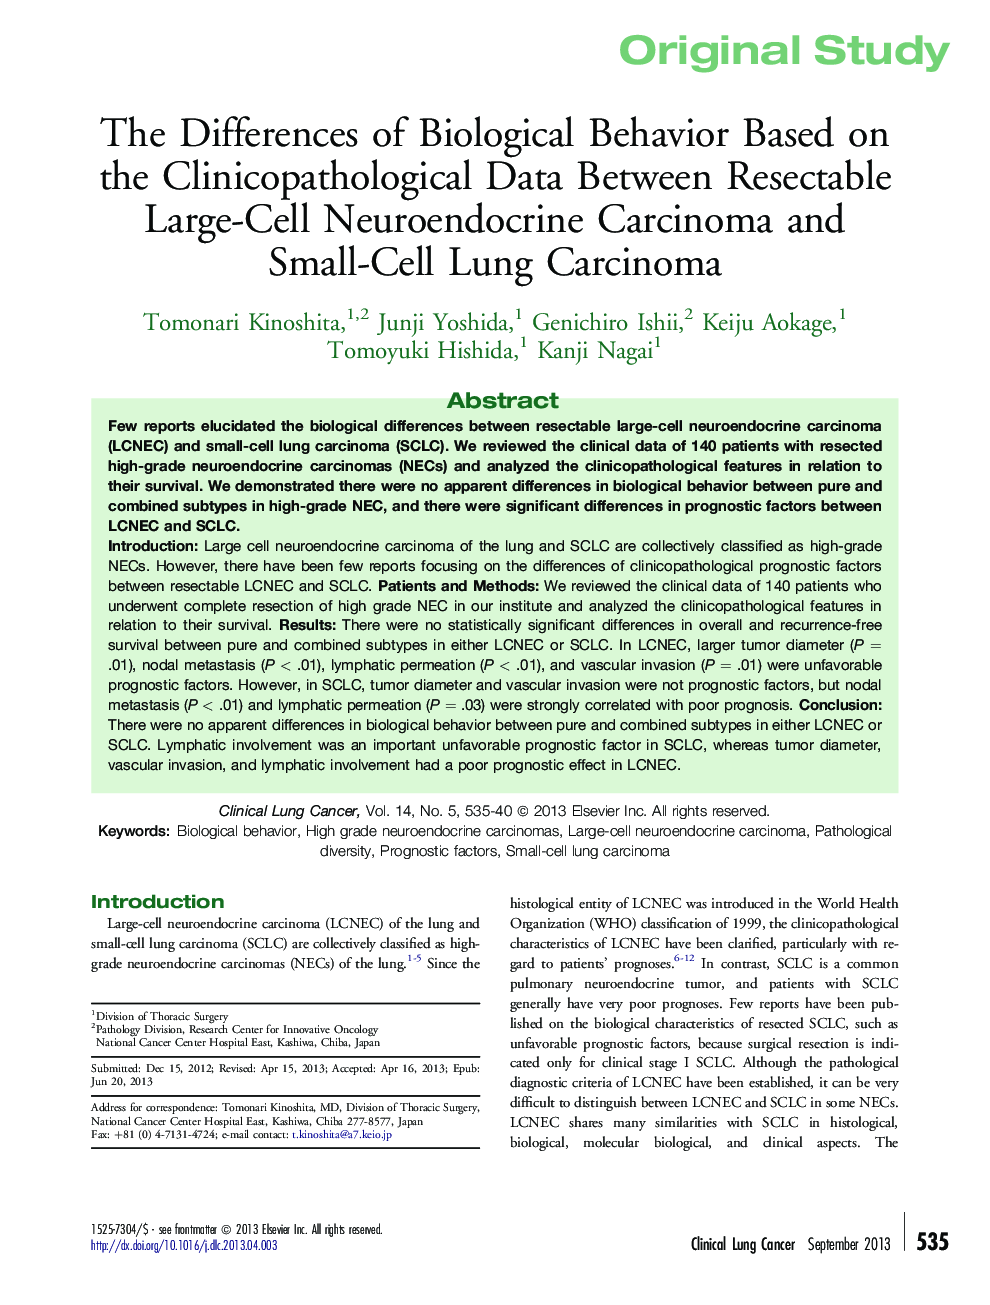 تفاوت رفتار بیولوژیکی بر اساس داده های کلینیکوپاتولوژیک بین کارسینوم نورونودرکتین بزرگ سلولی بزرگ و کارسینوم ریه کوچک سلولی 